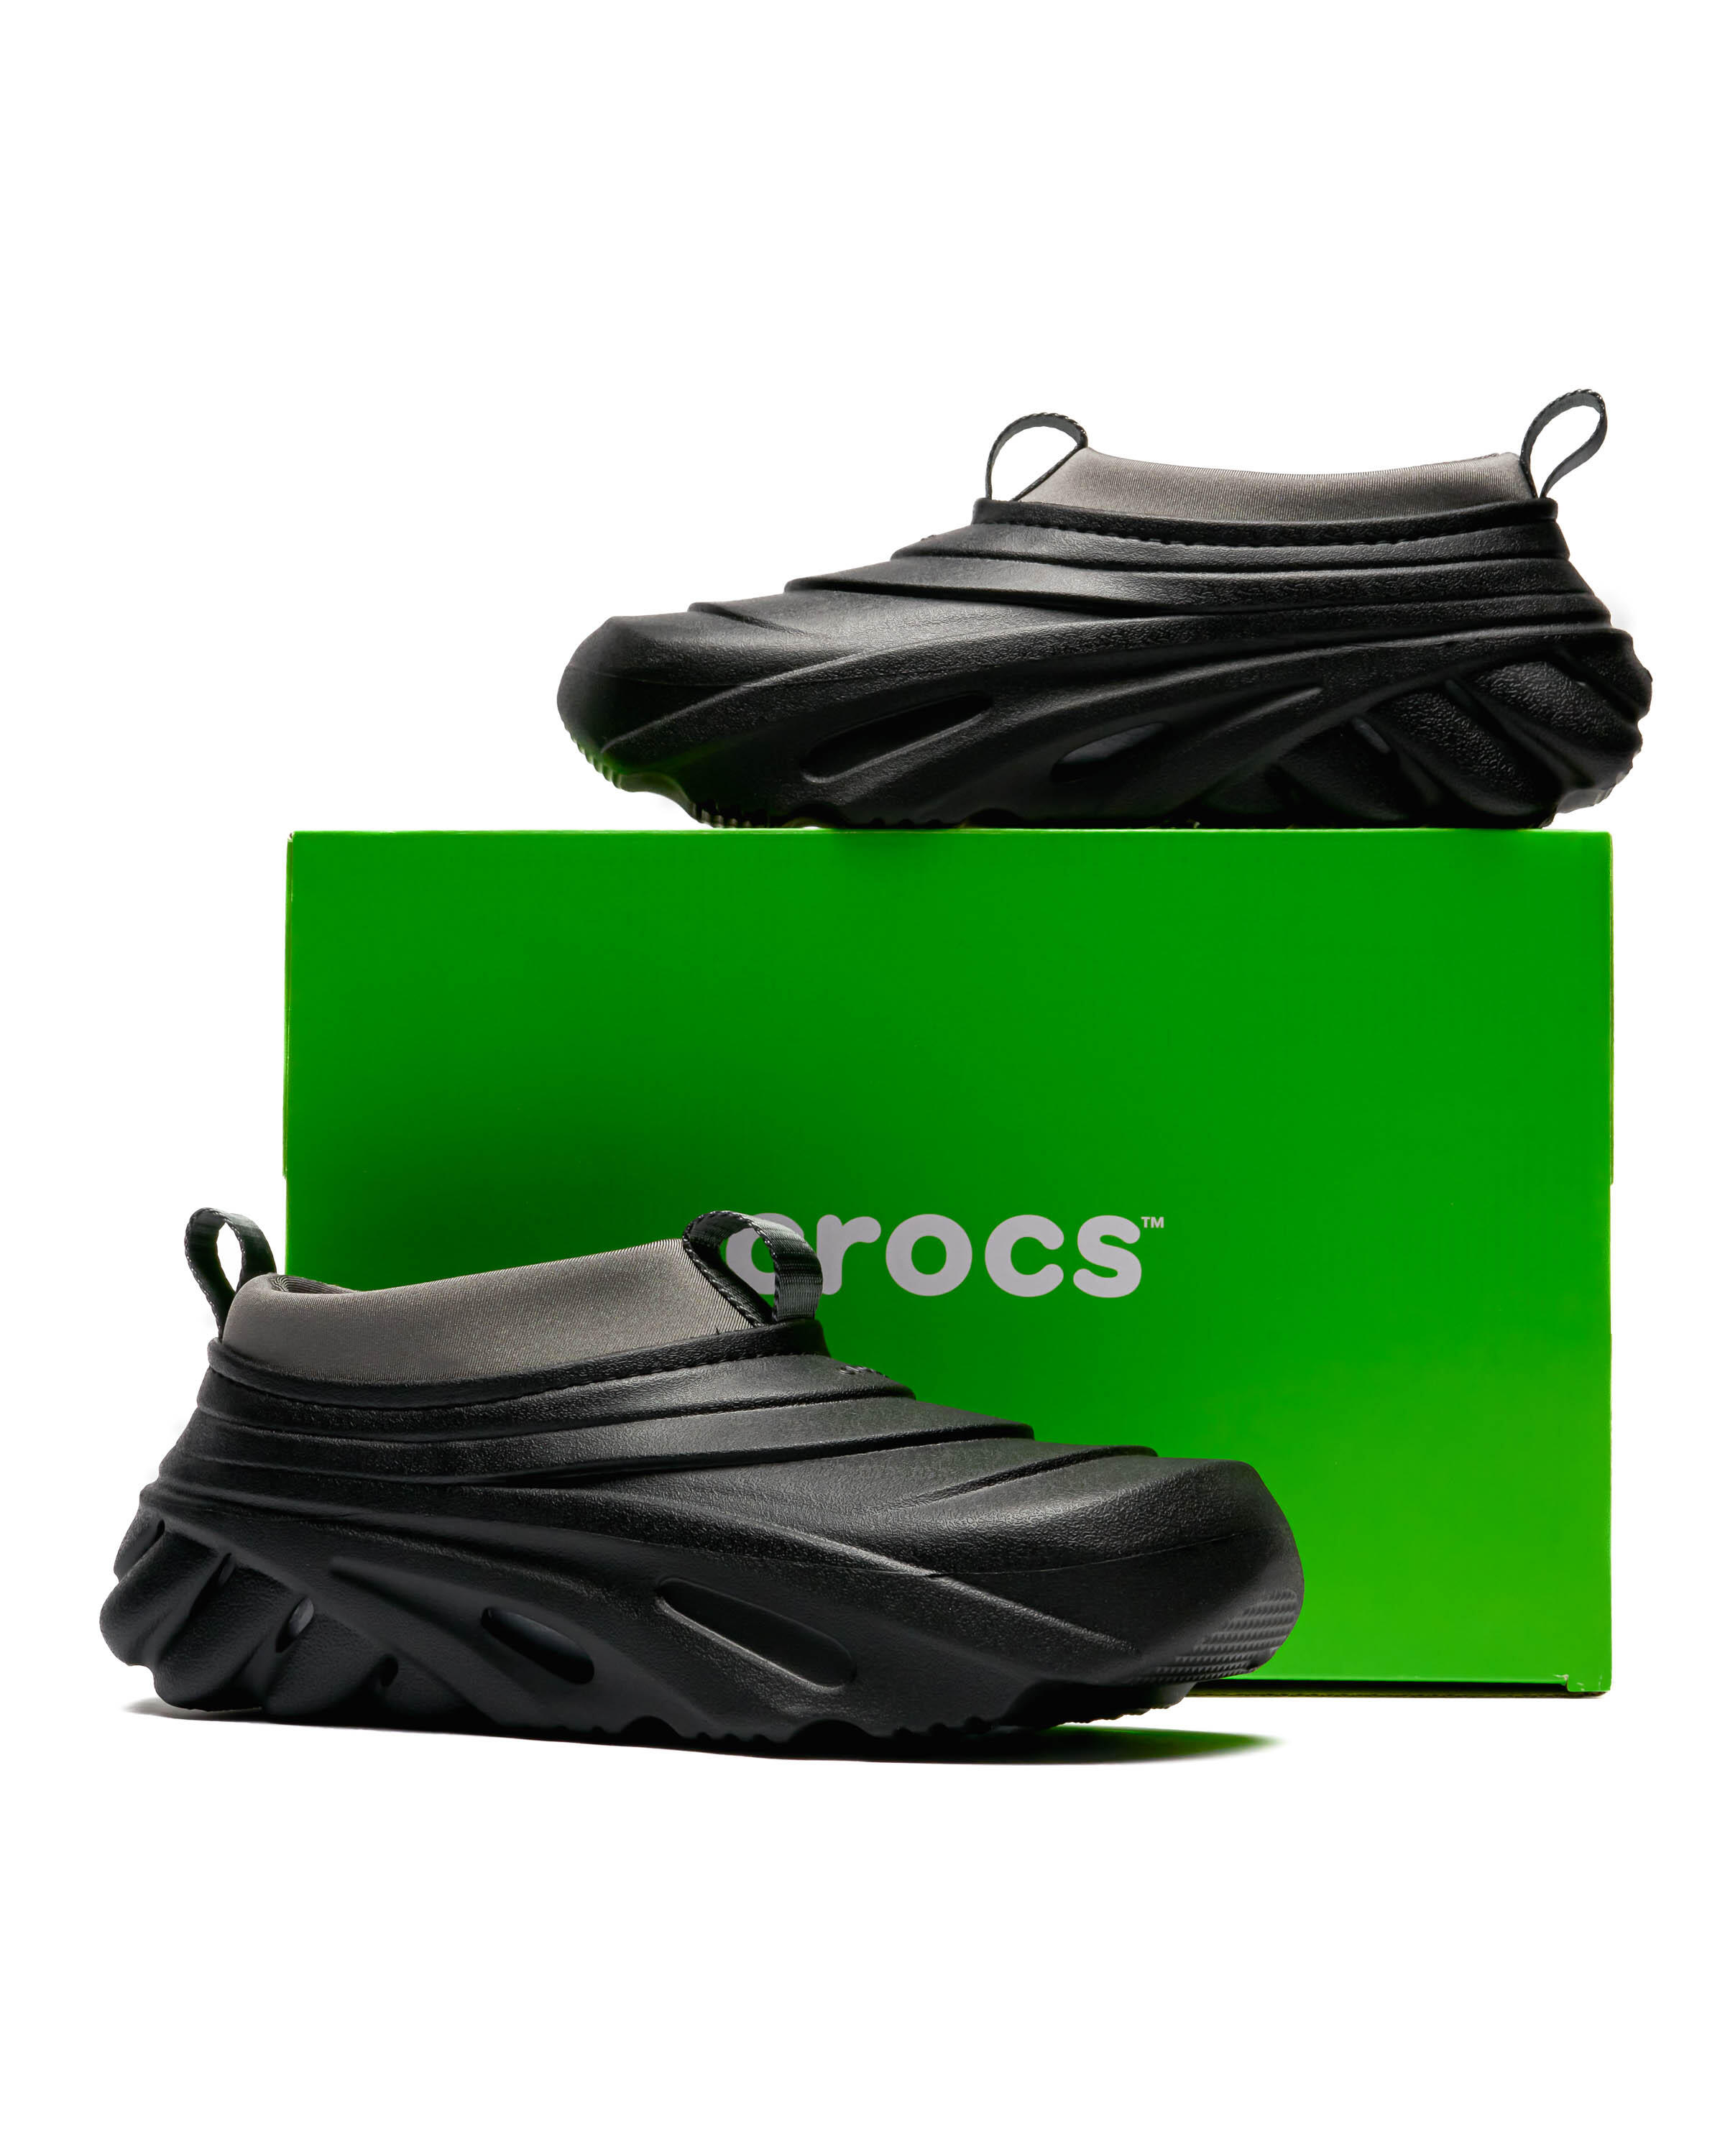 Crocs Echo Storm